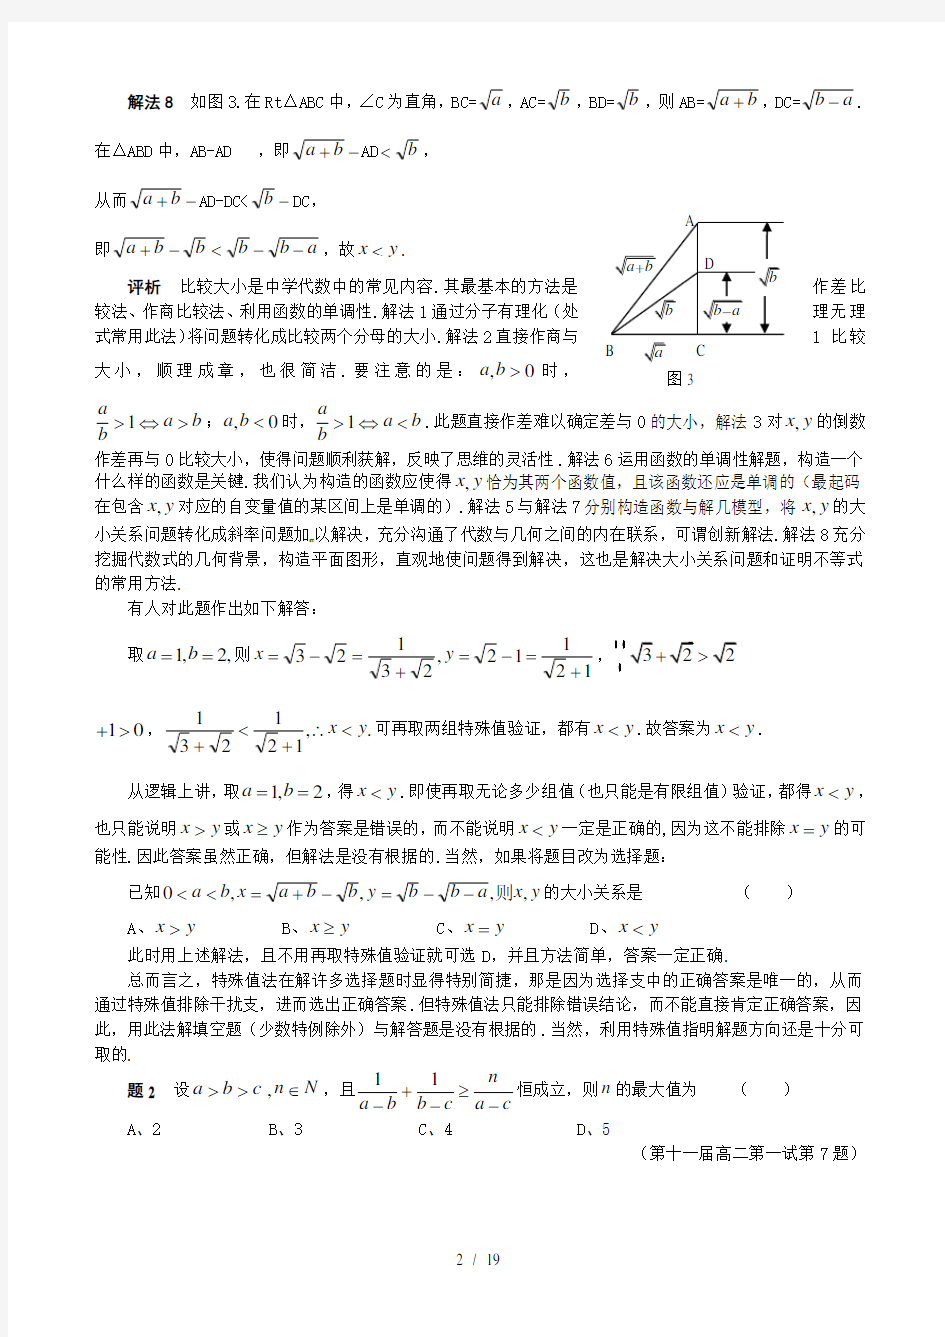 高中希望杯数学竞赛试题详解(1-10题)